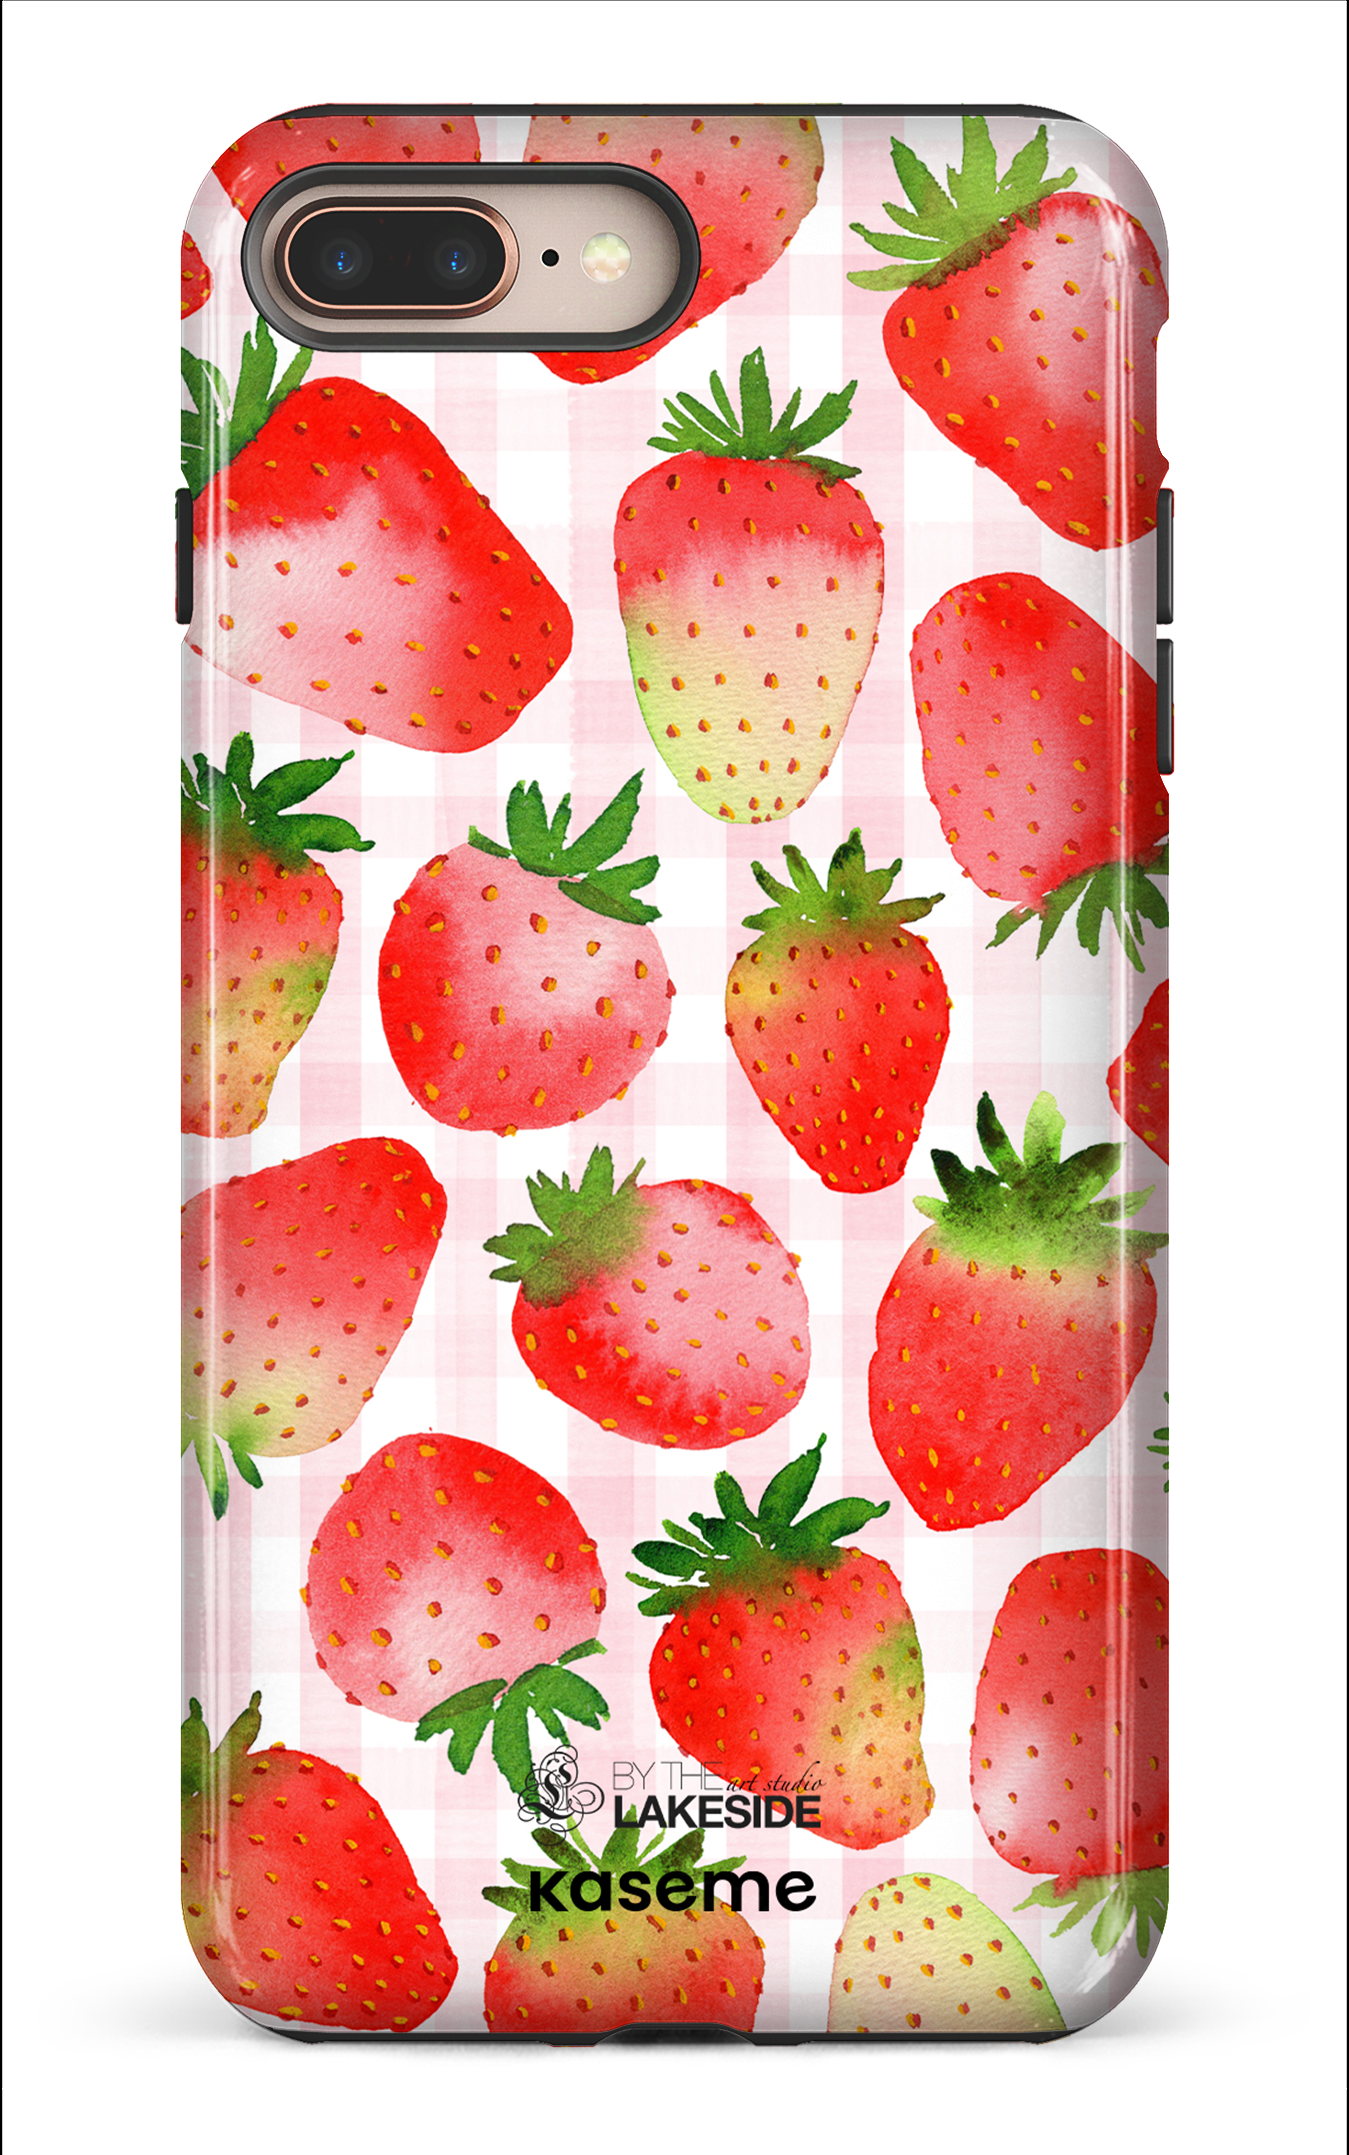 Strawberry Fields by Pooja Umrani - iPhone 8 Plus